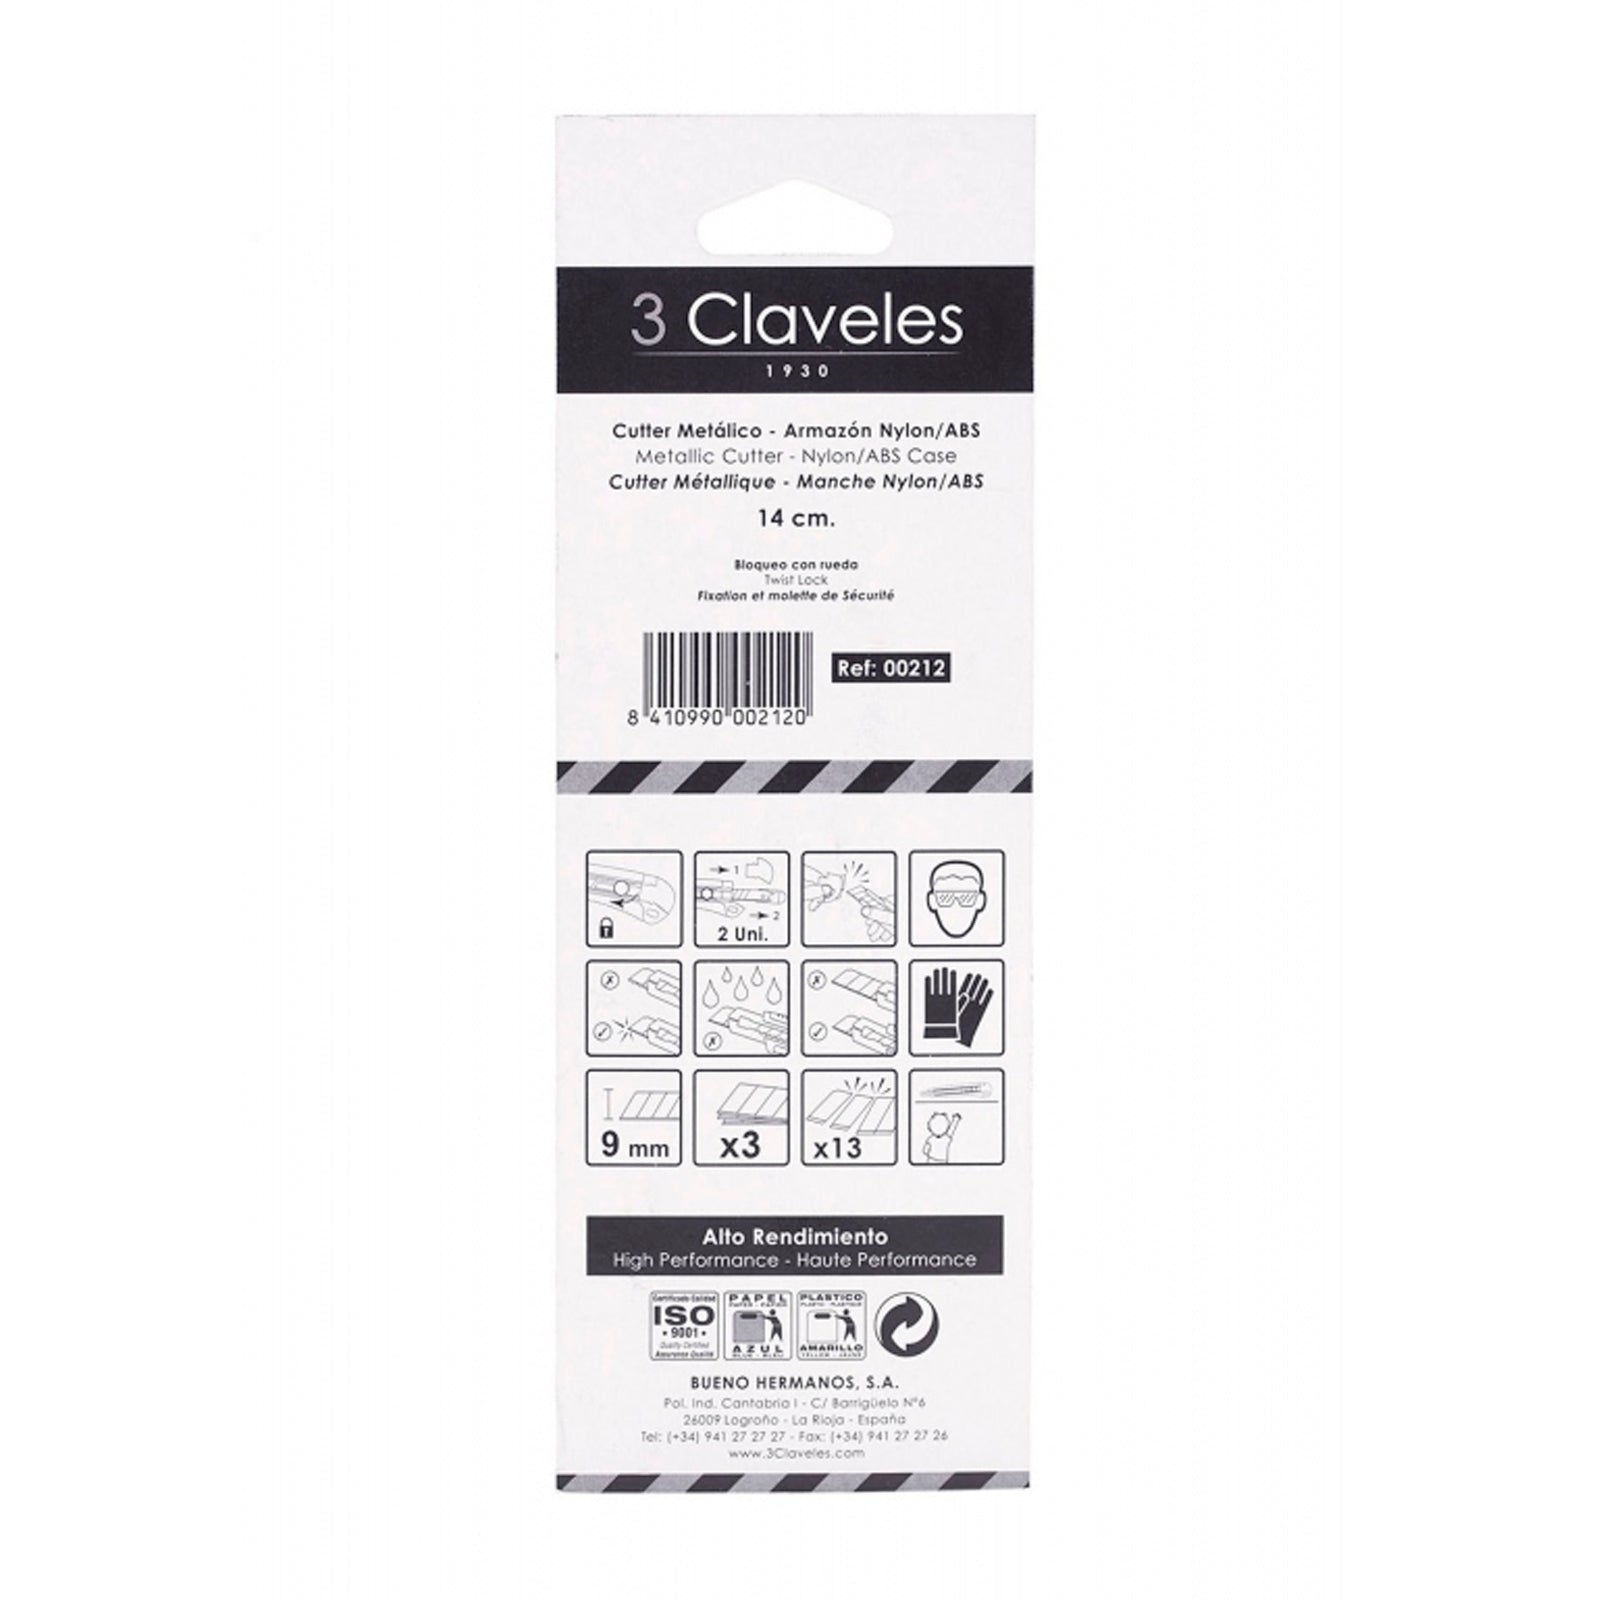 3 Claveles 00212 - Cutter Alto Rendimiento Metálico con Armazón Nylon/ABS